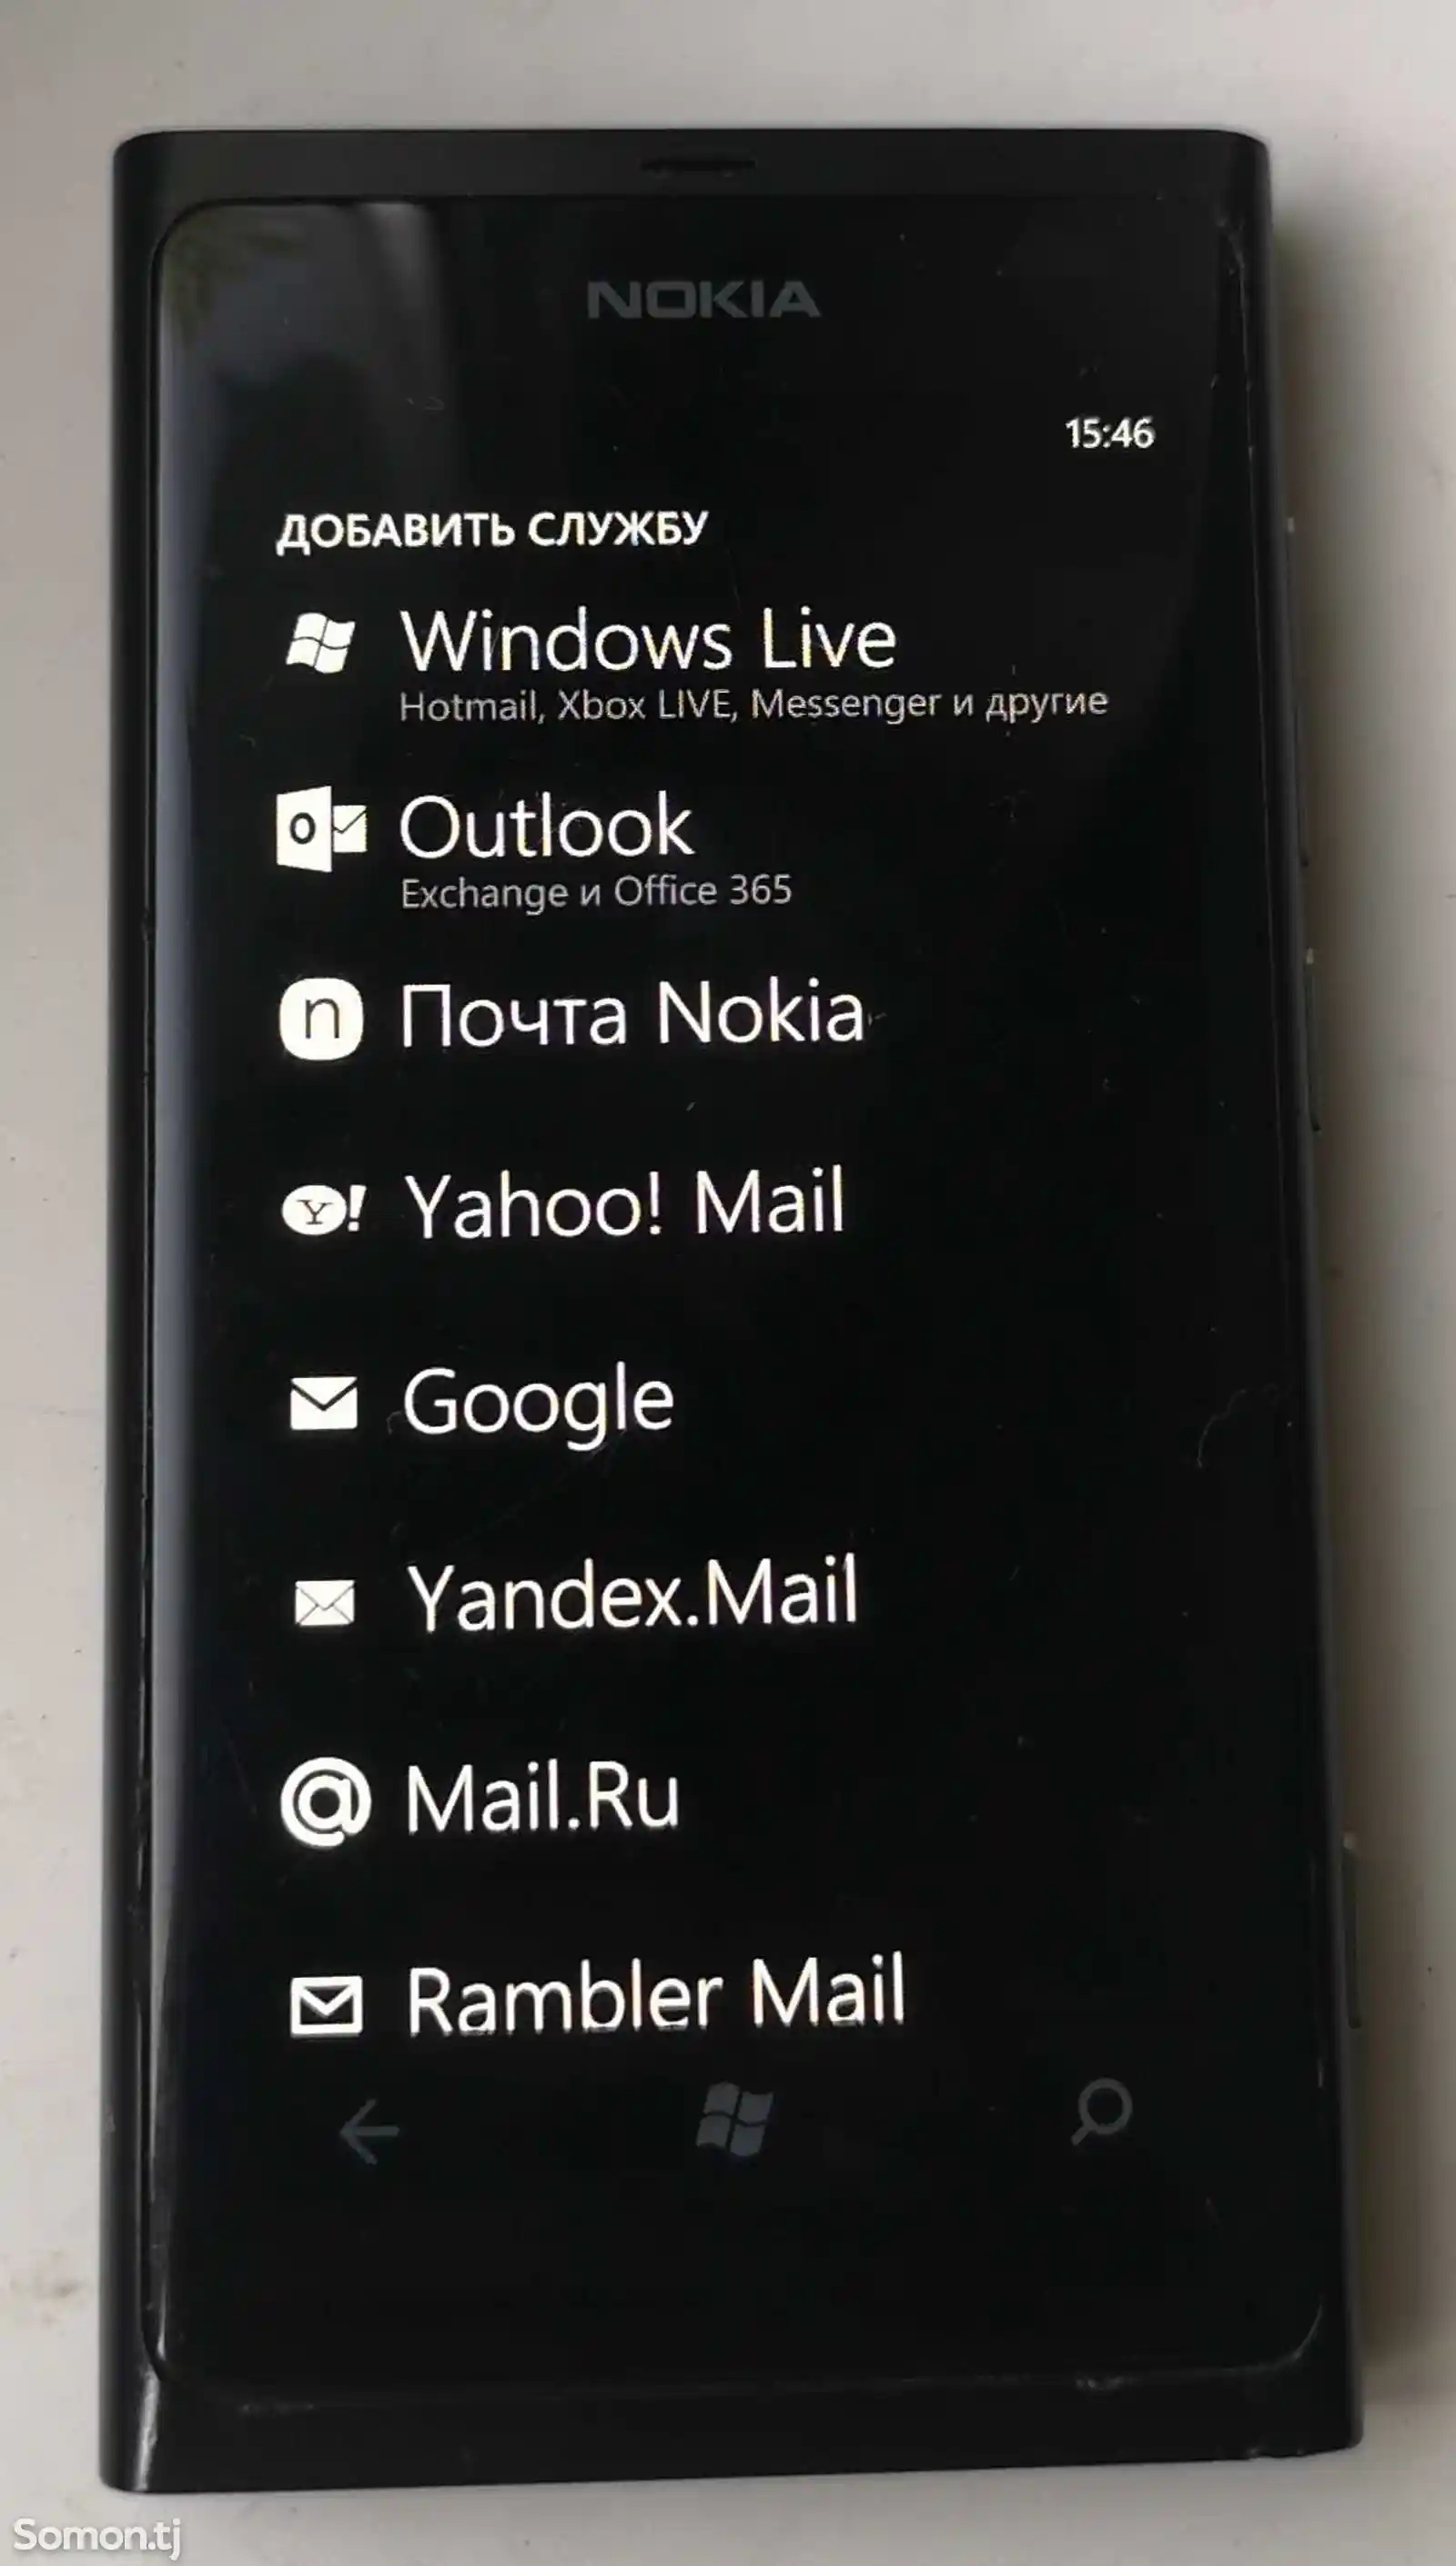 Nokia Lumia 800-5